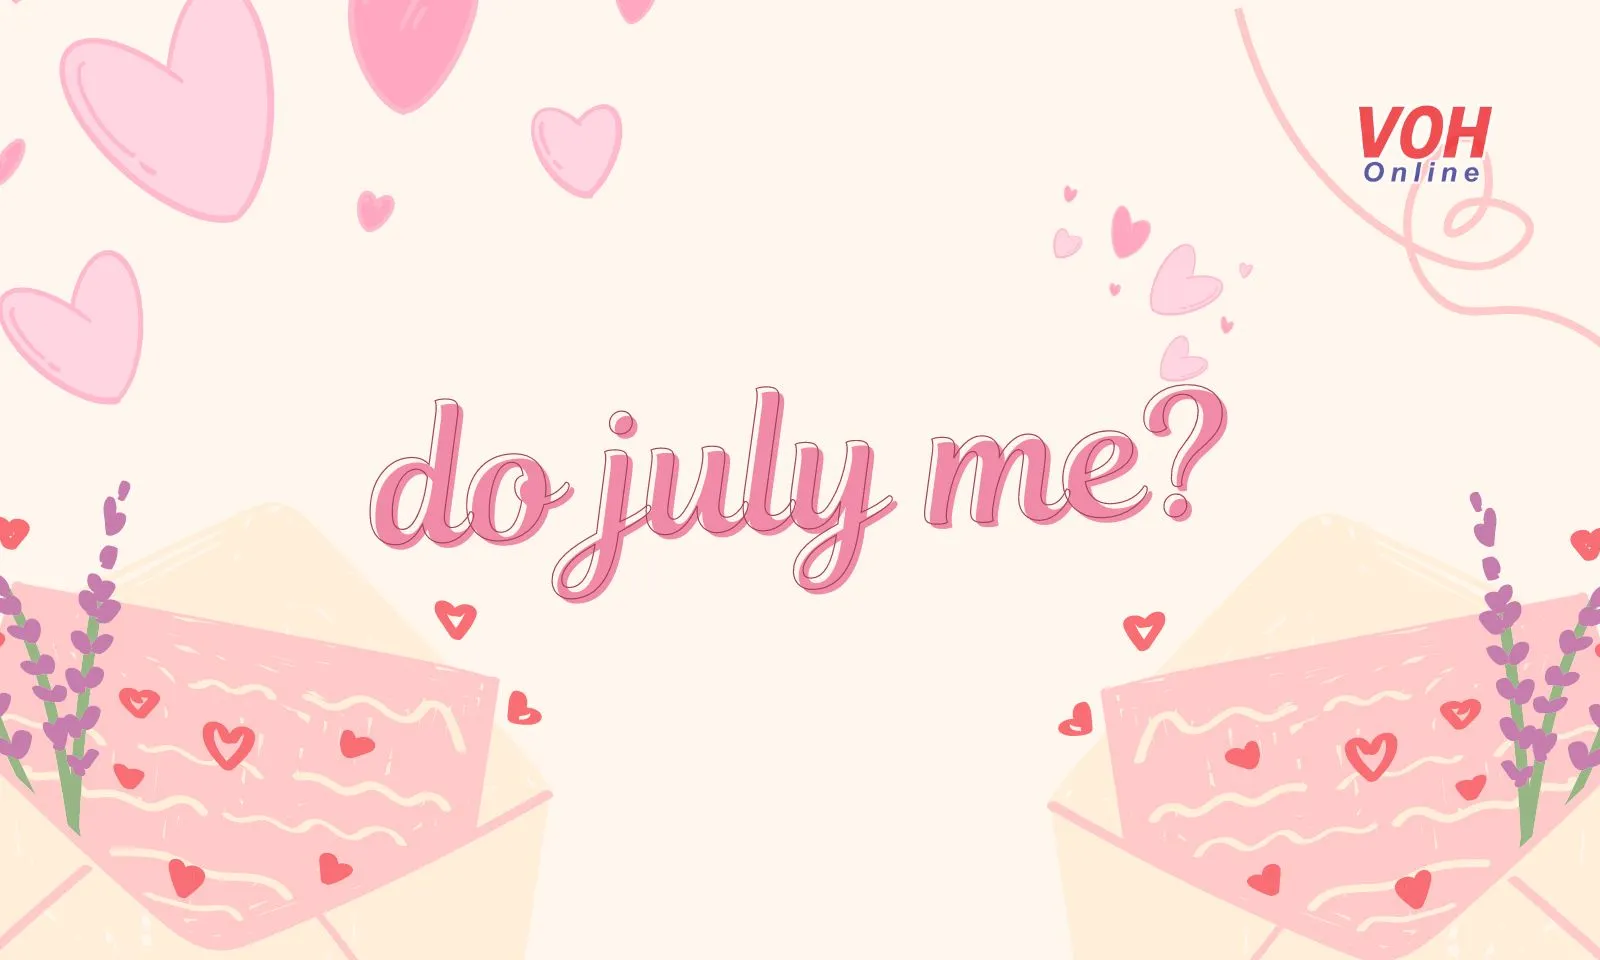 Do july me là gì mà được xem là lời tỏ tình của tháng 7?